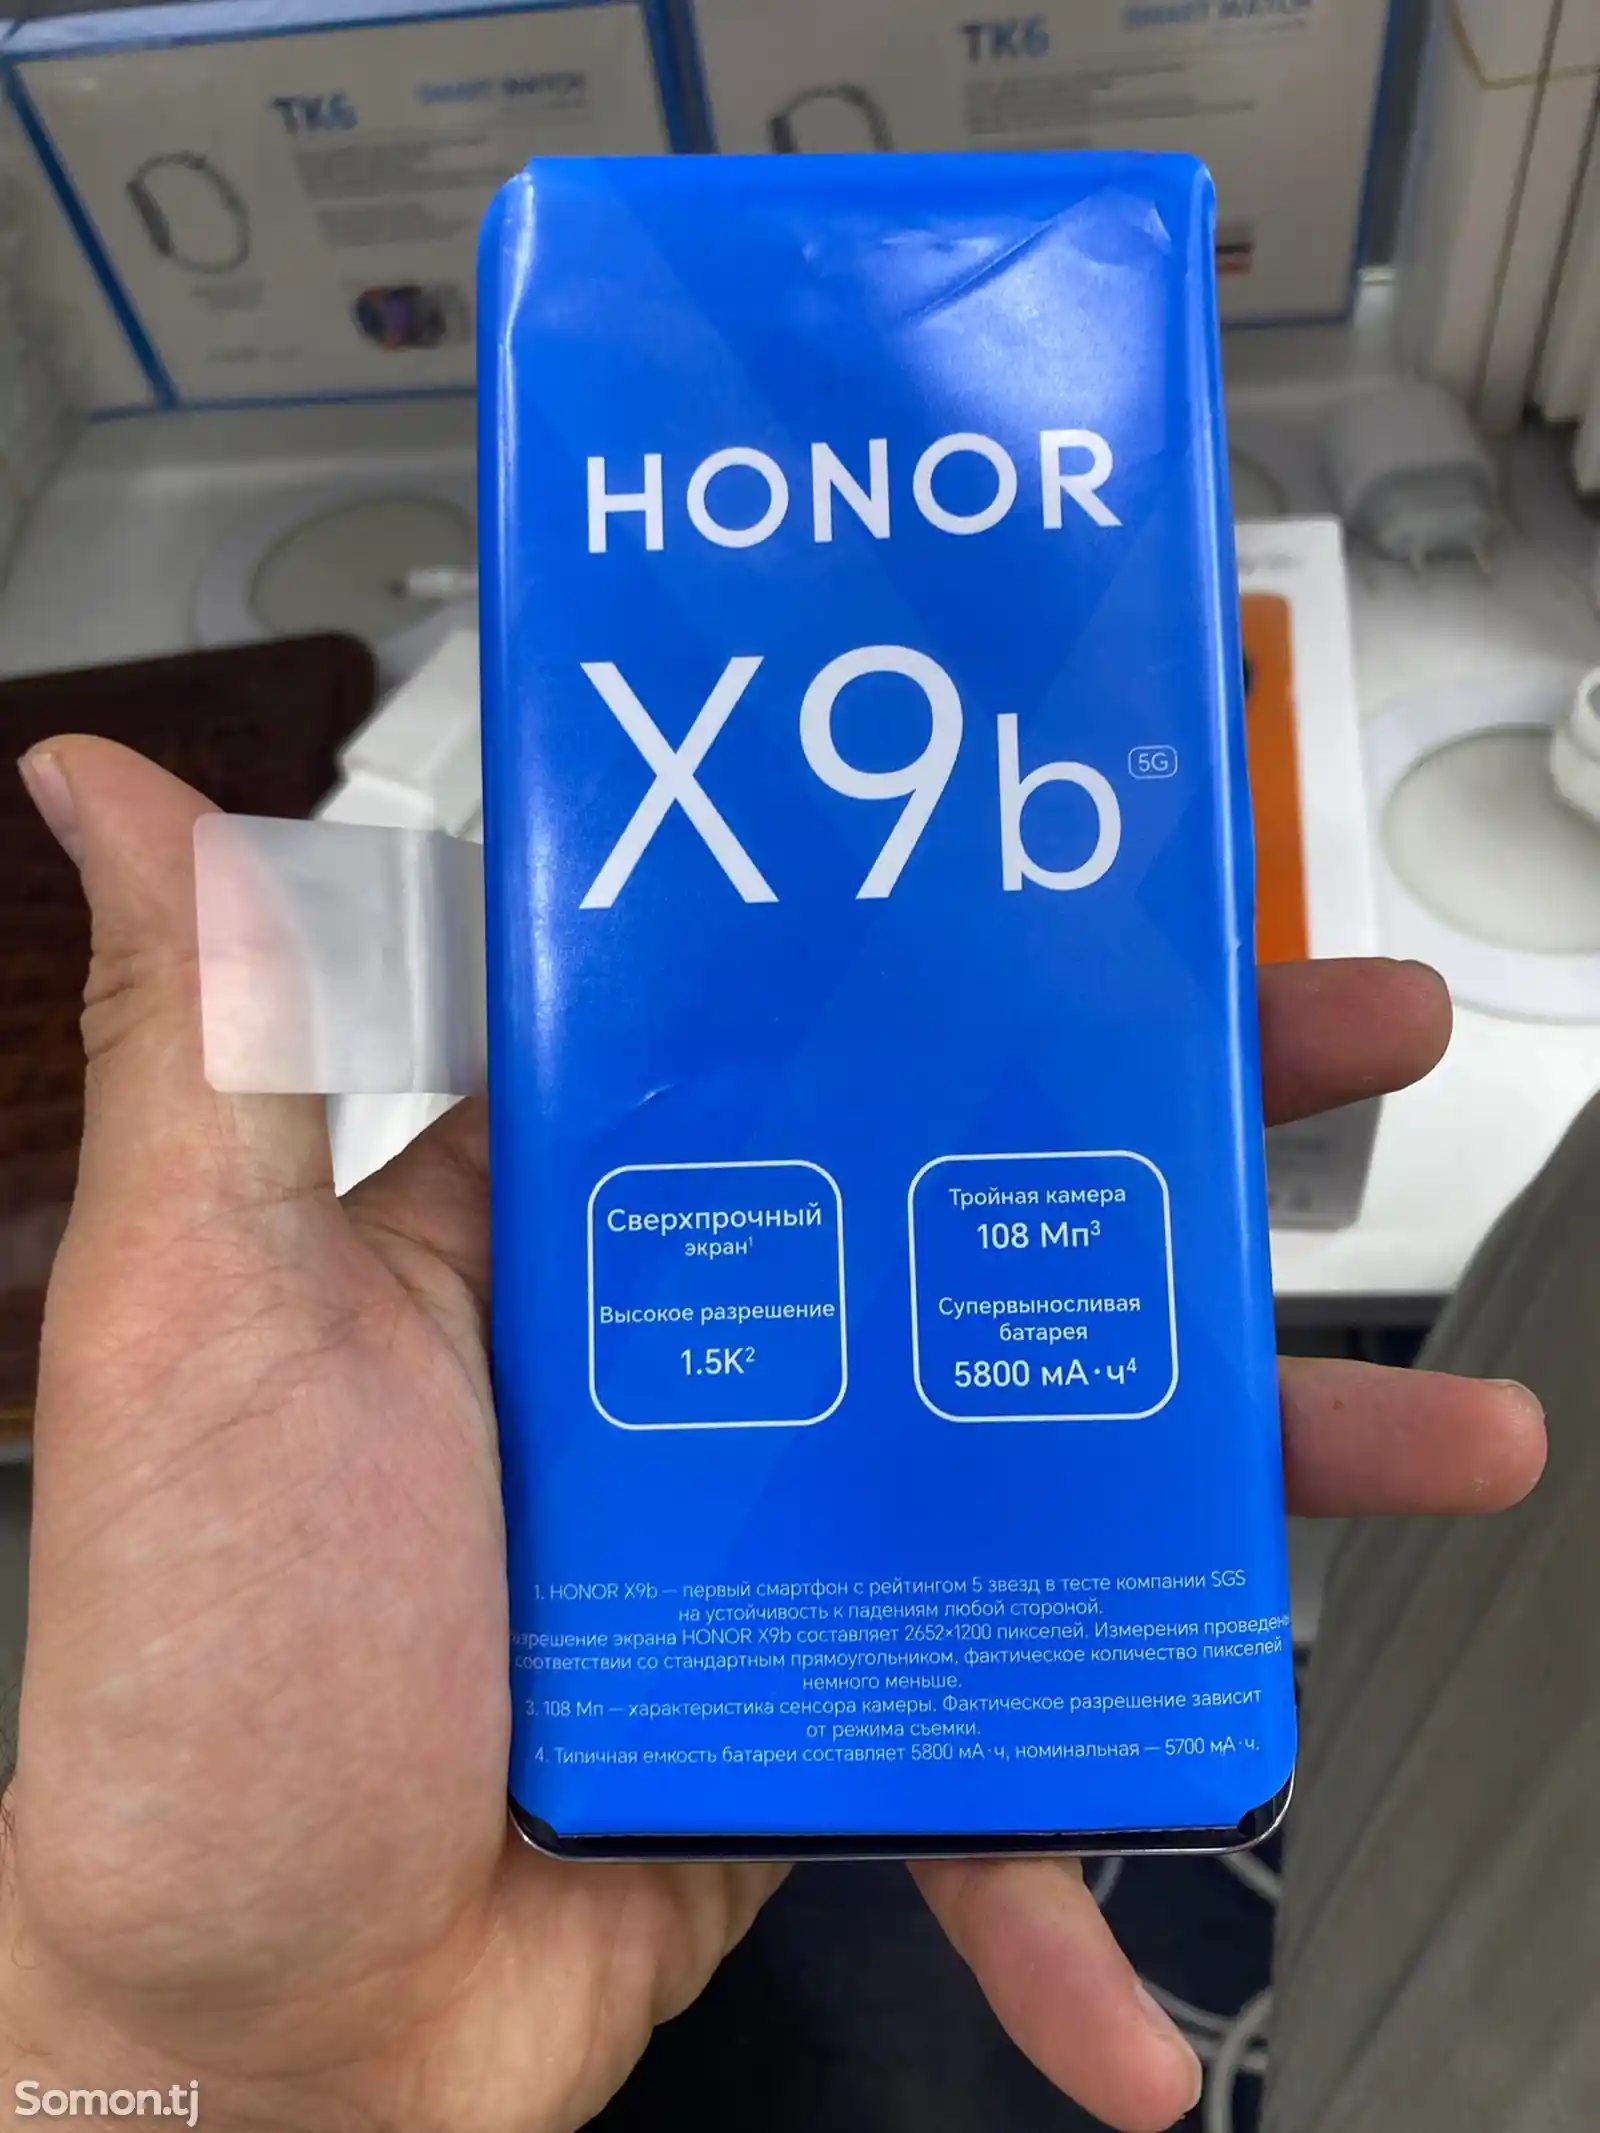 Honor x9b-2